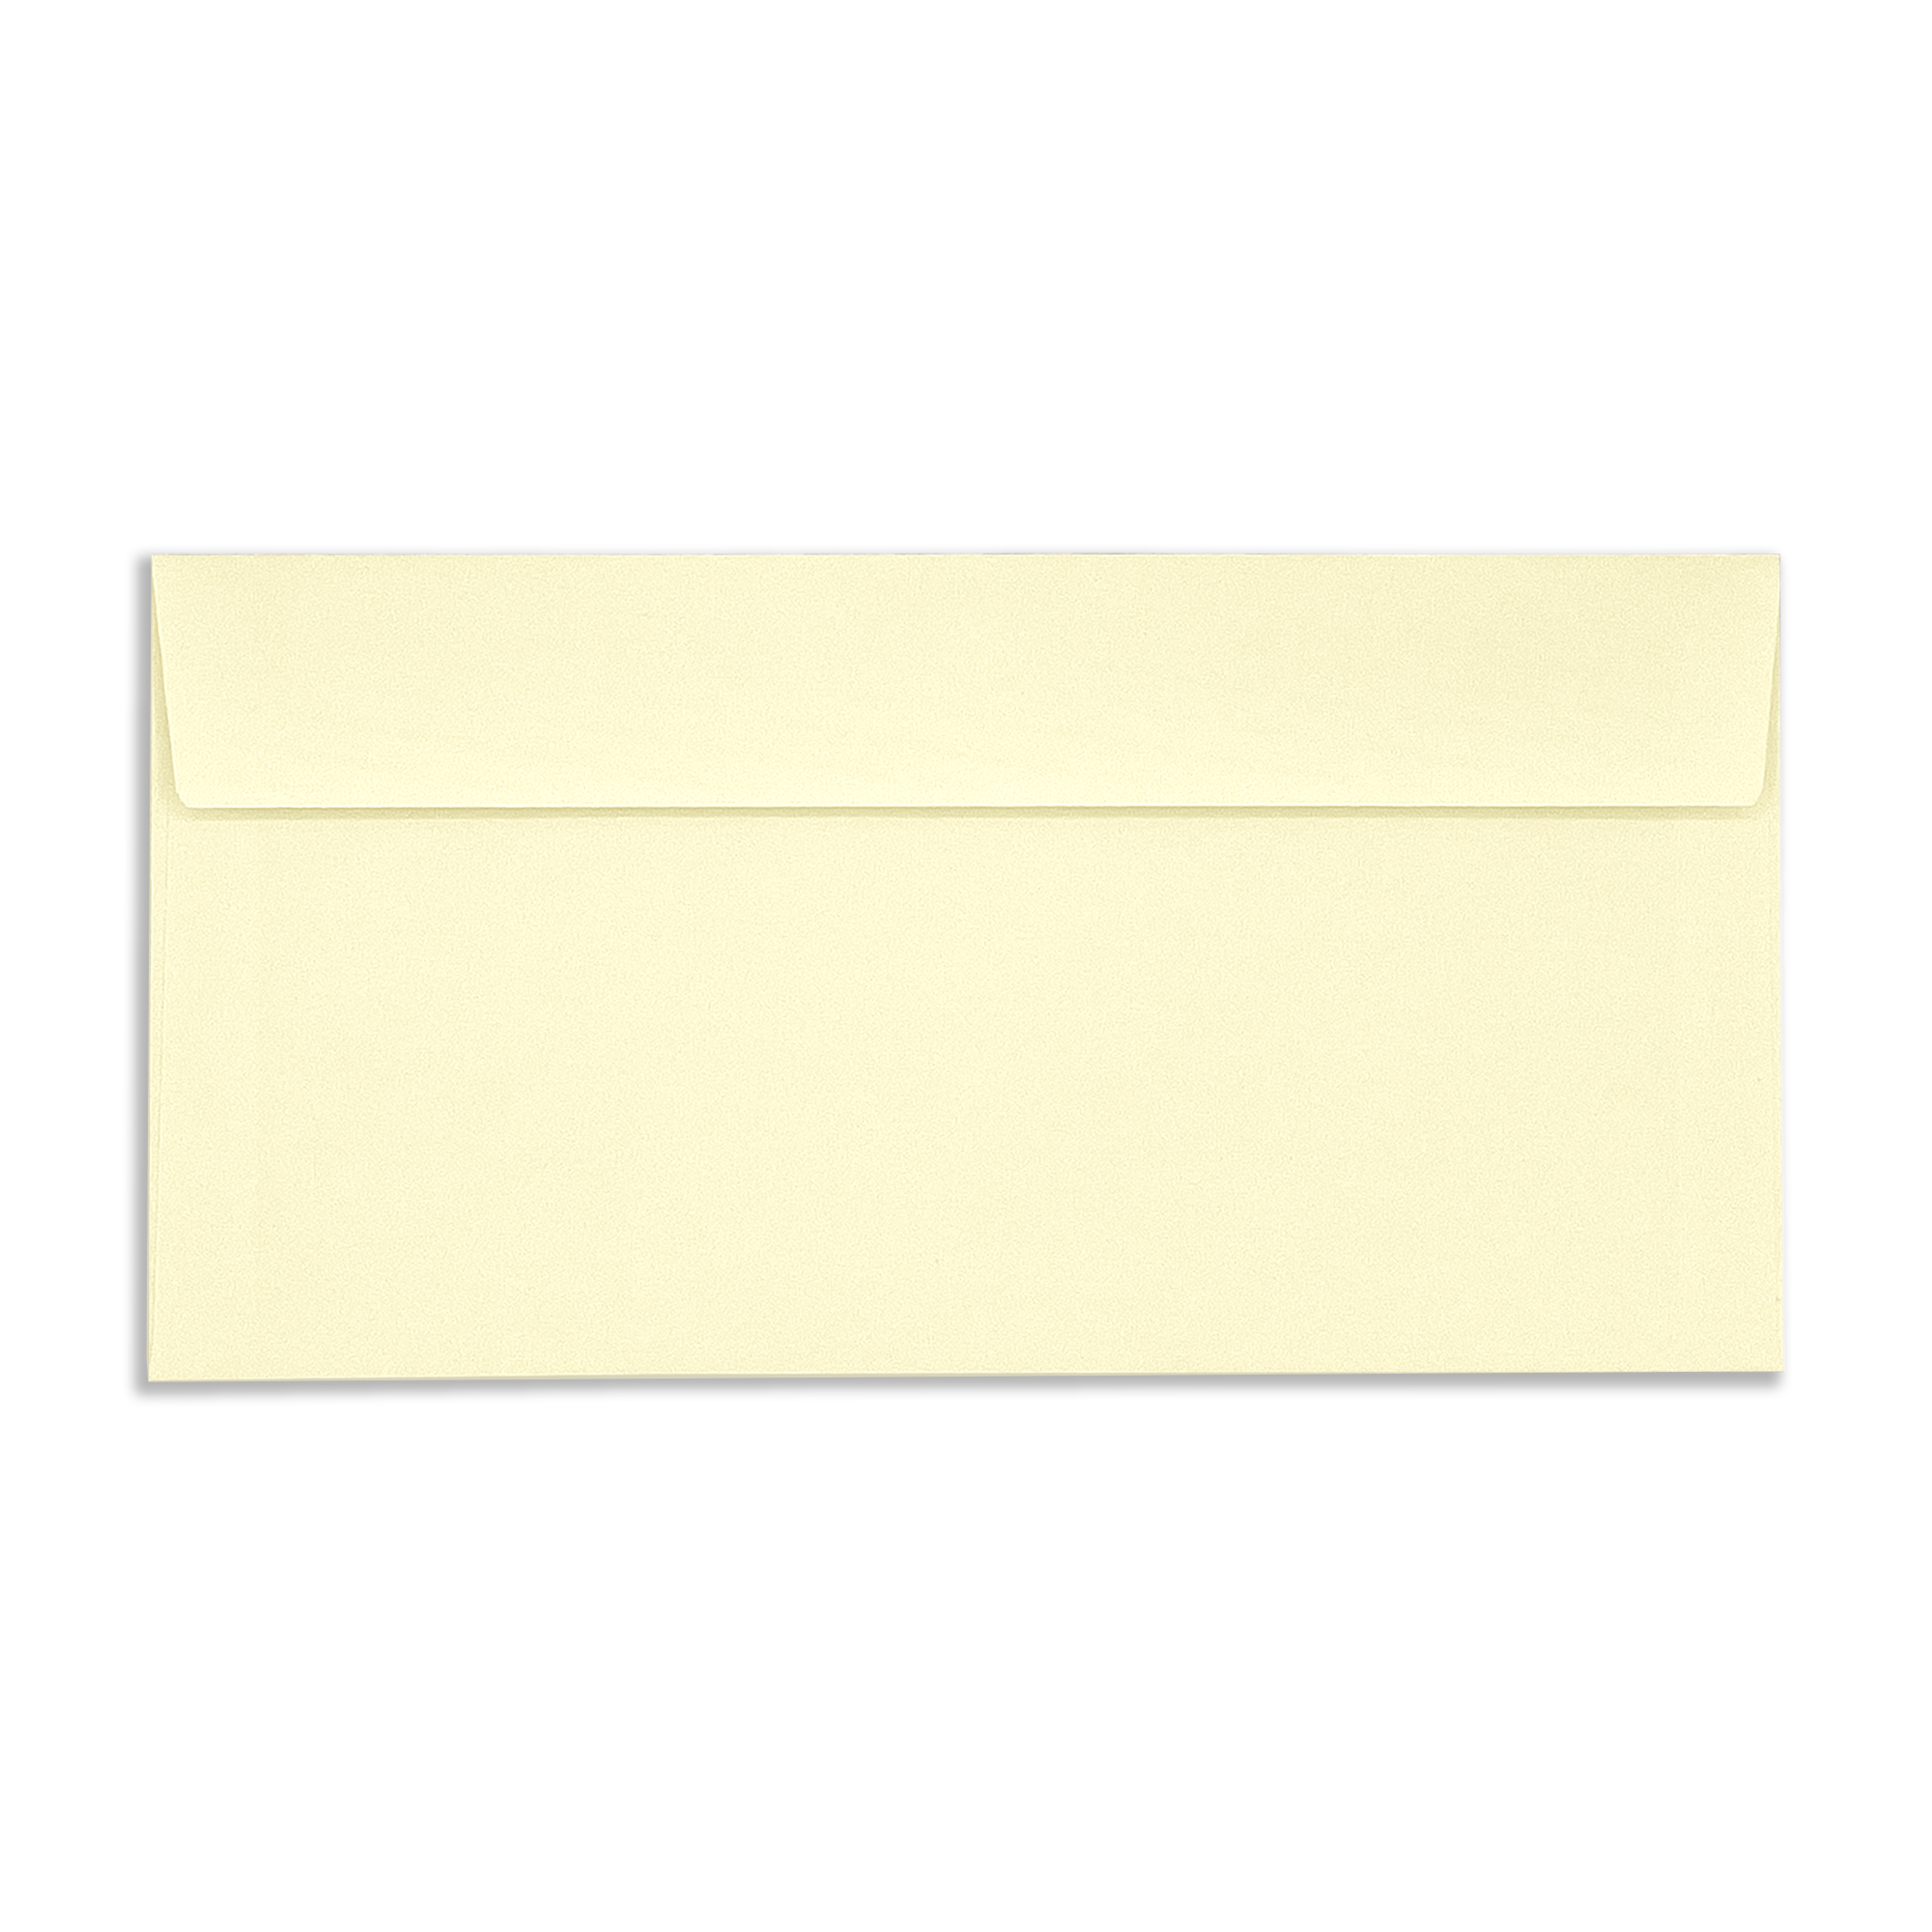 DL-vellum-wove-120gsm-wallet-envelopes-flap